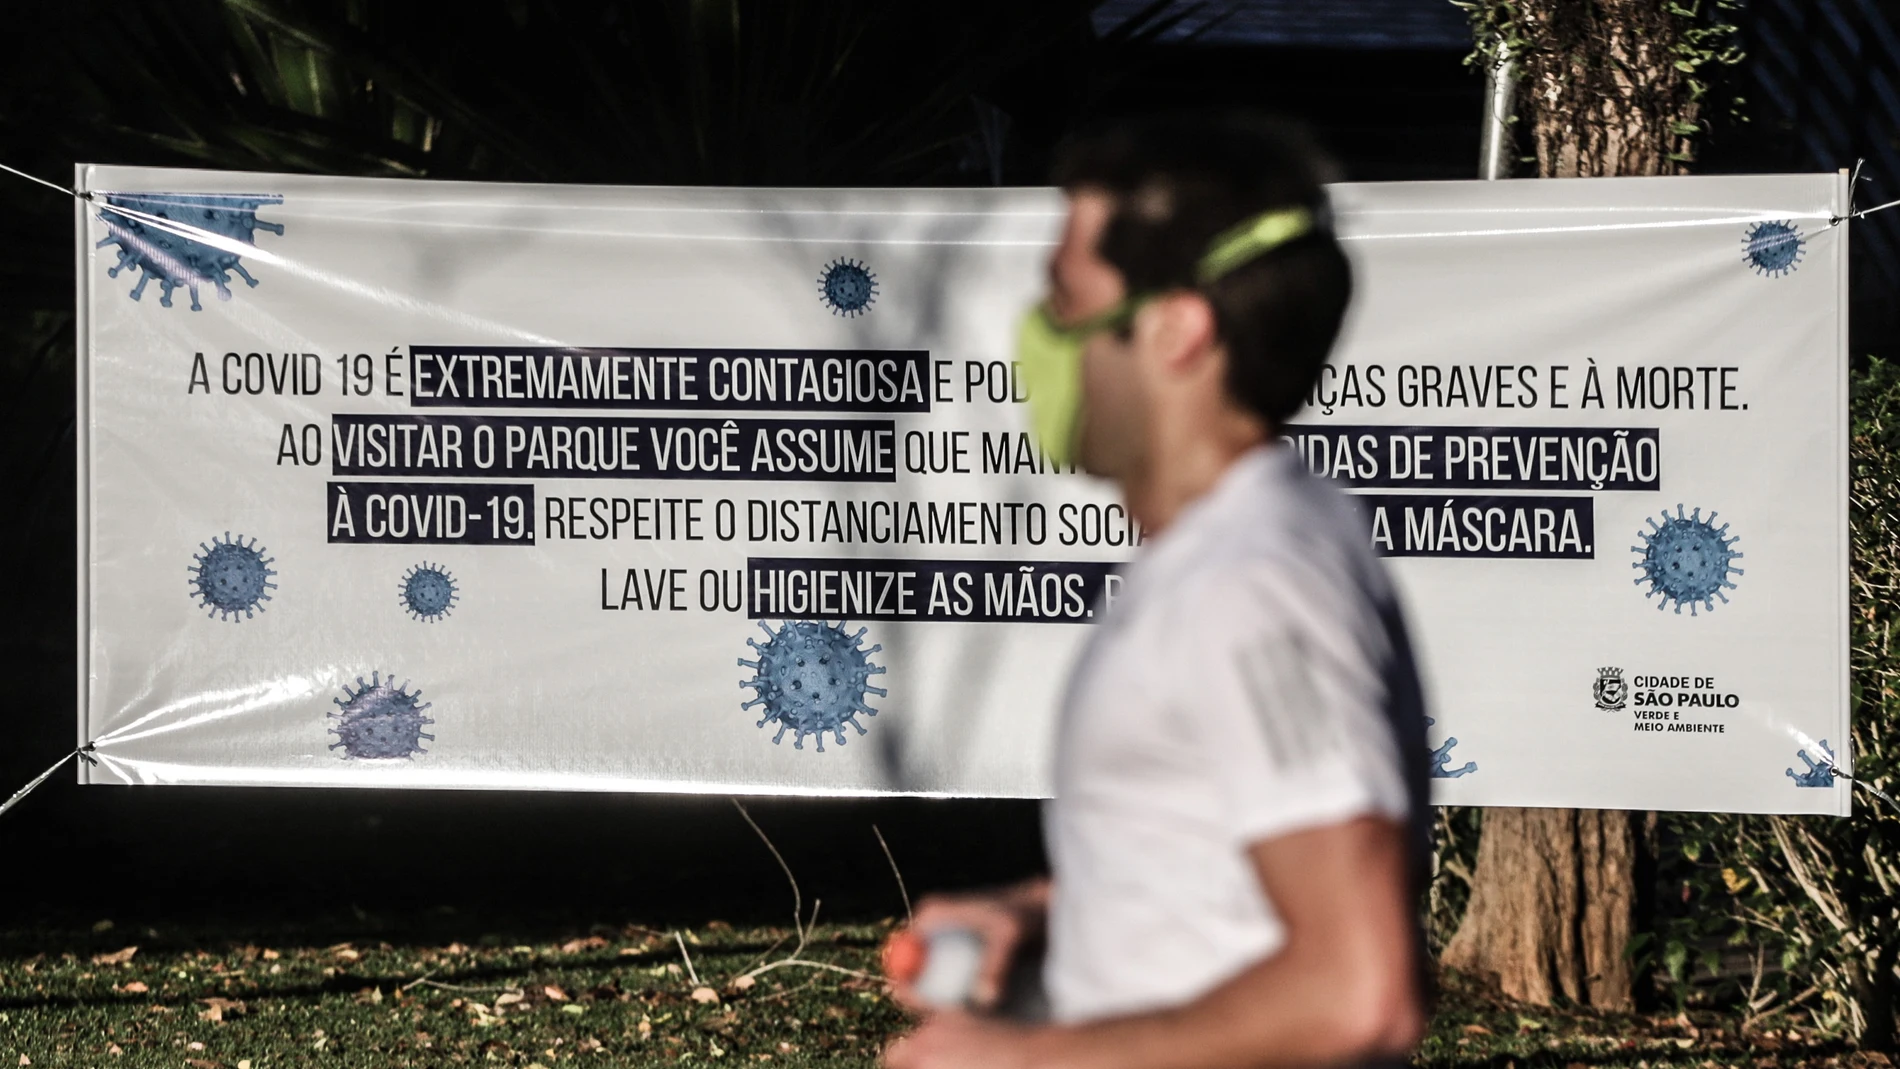 El Ministerio de Salud brasileño atribuyó a un “error humano” la publicación de un mensaje en sus redes sociales en el que recomendó el distanciamiento social